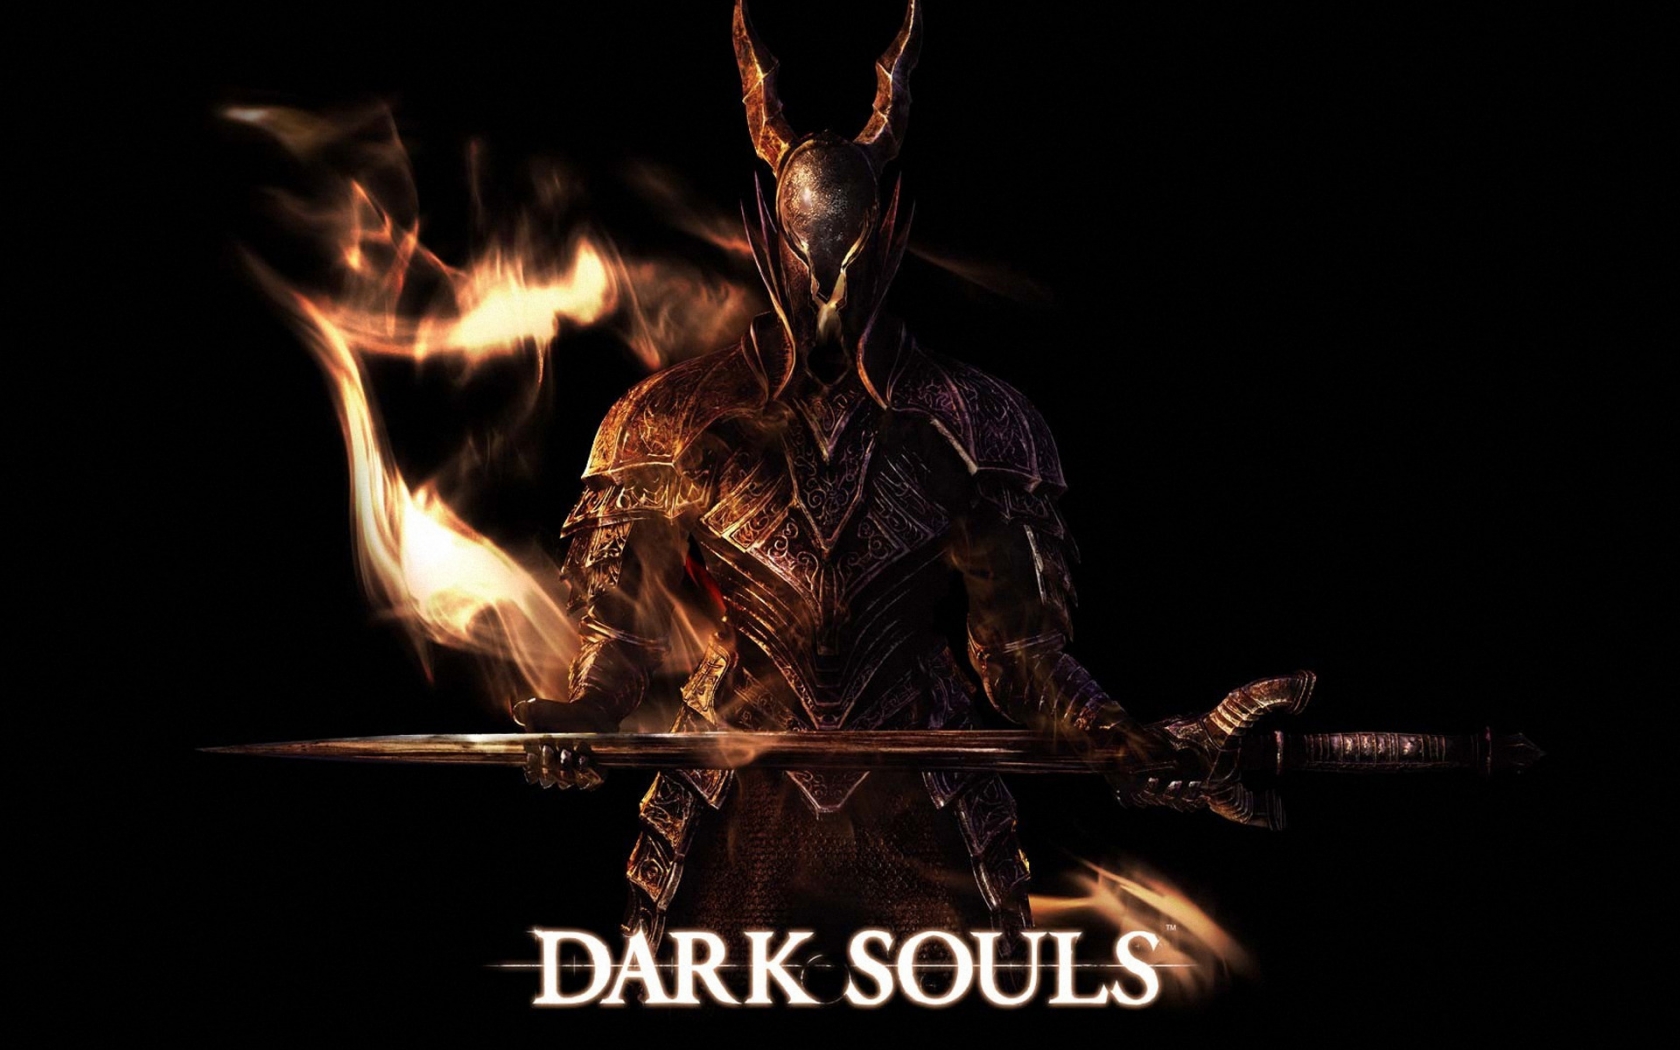 Dark Souls Art for 1680 x 1050 widescreen resolution